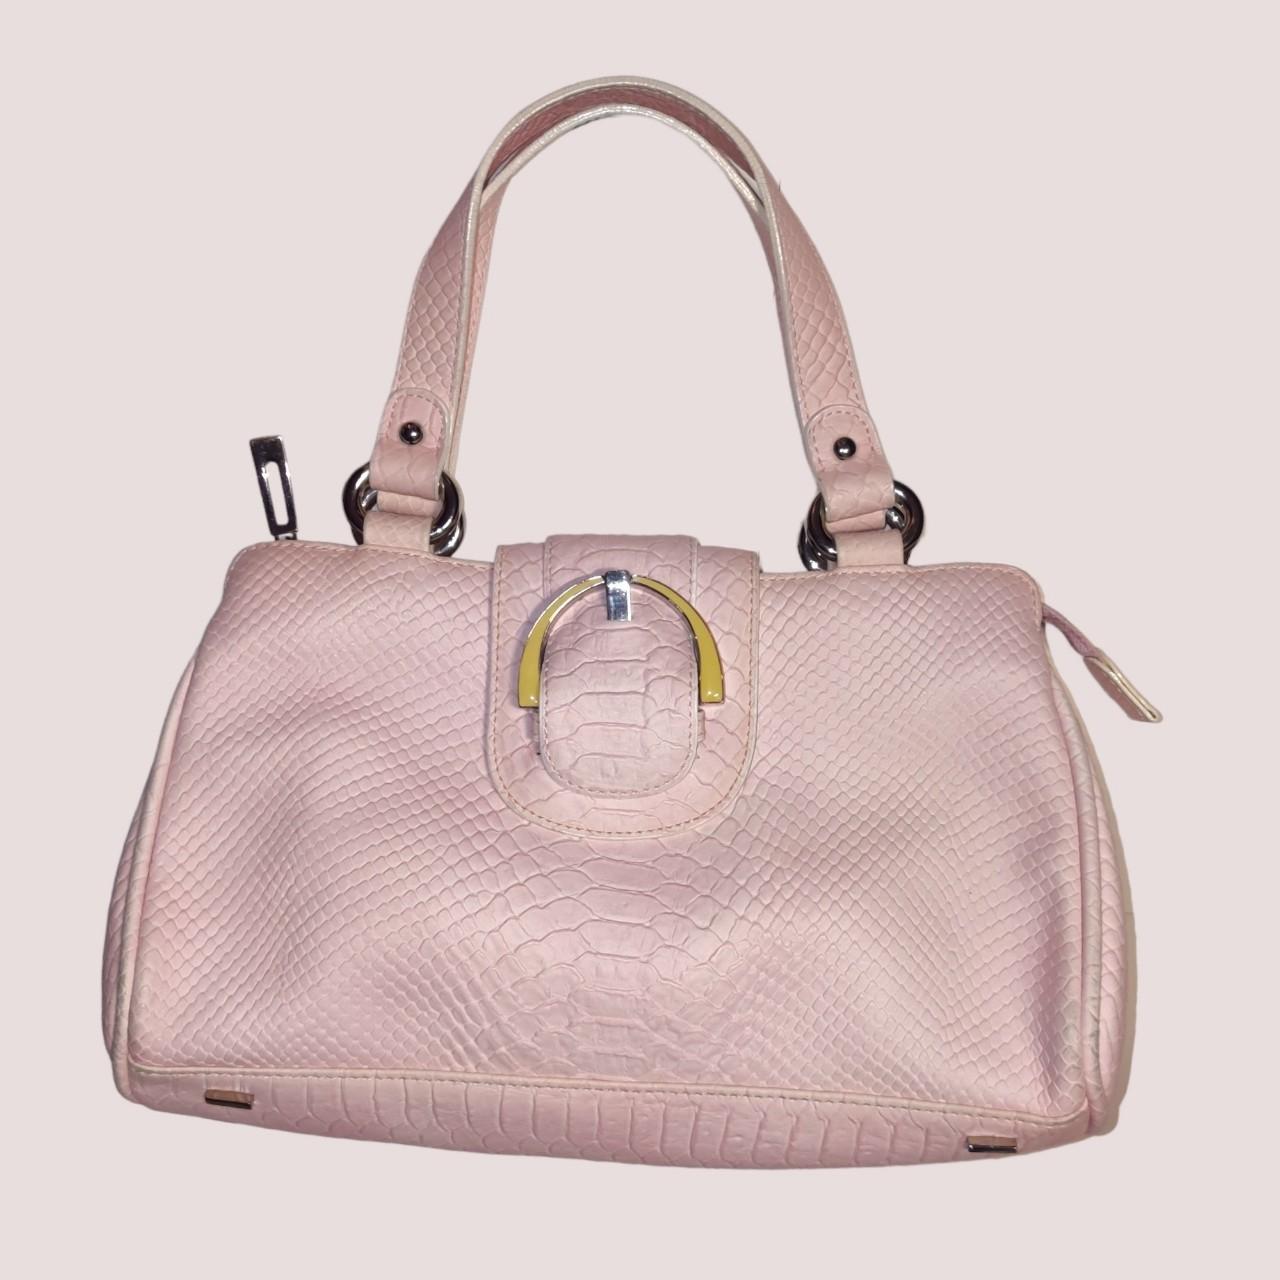 Dissona Italian Designer Pink Leather Shoulder Bag! - Depop